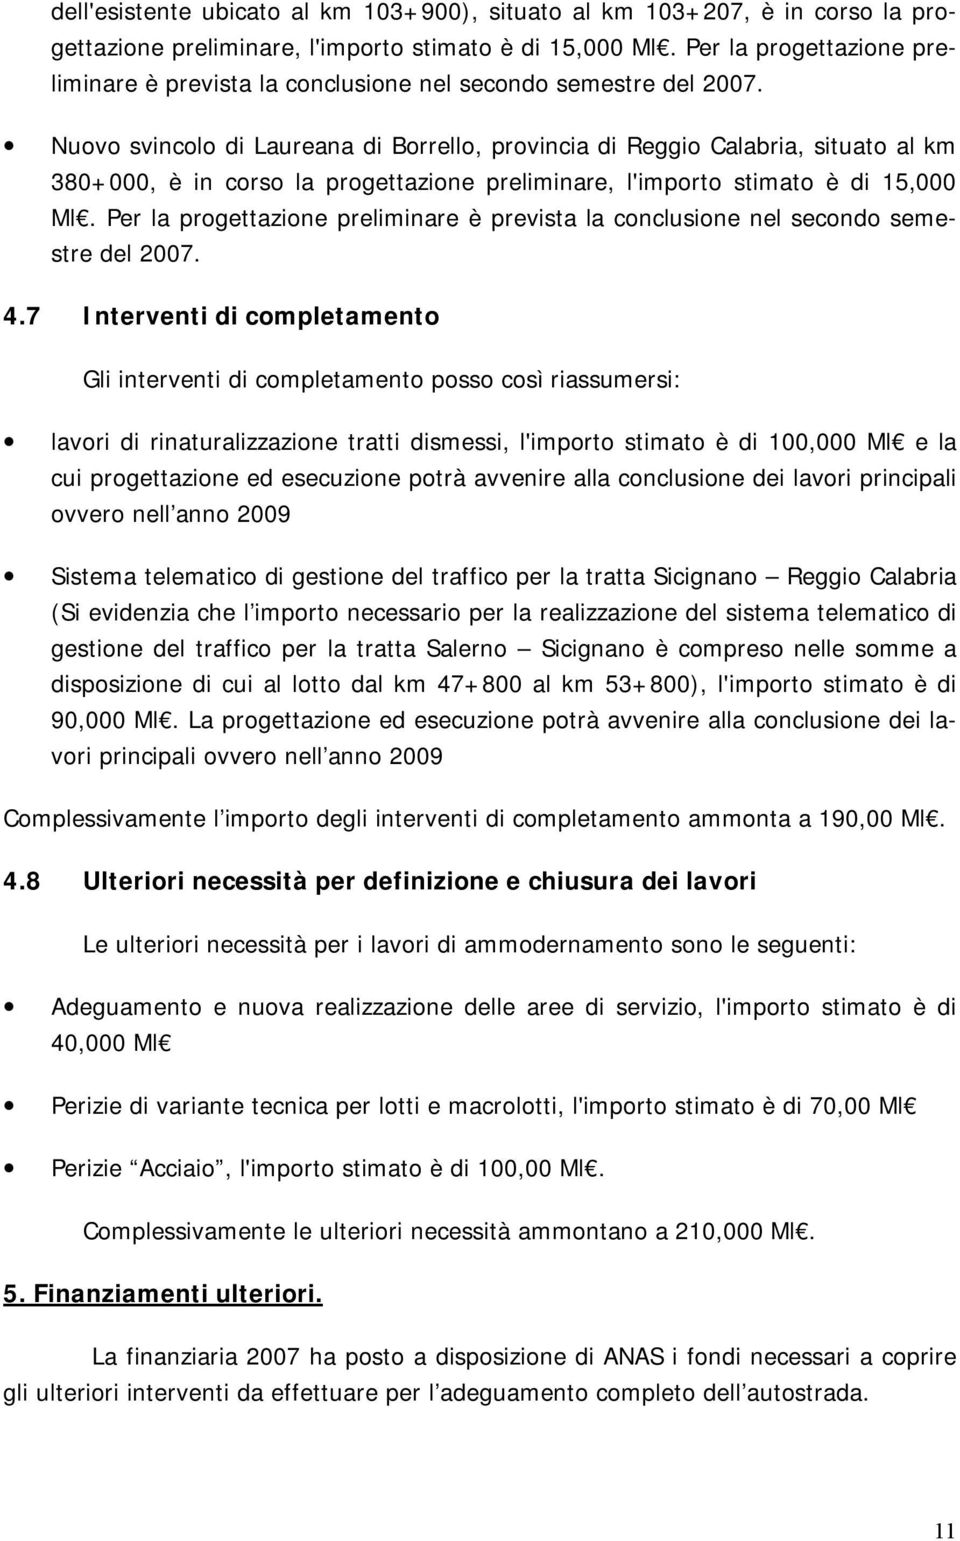 Nuovo svincolo di Laureana di Borrello, provincia di Reggio Calabria, situato al km 380+000, è in corso la progettazione preliminare, l'importo stimato è di 15,000 Ml.  4.